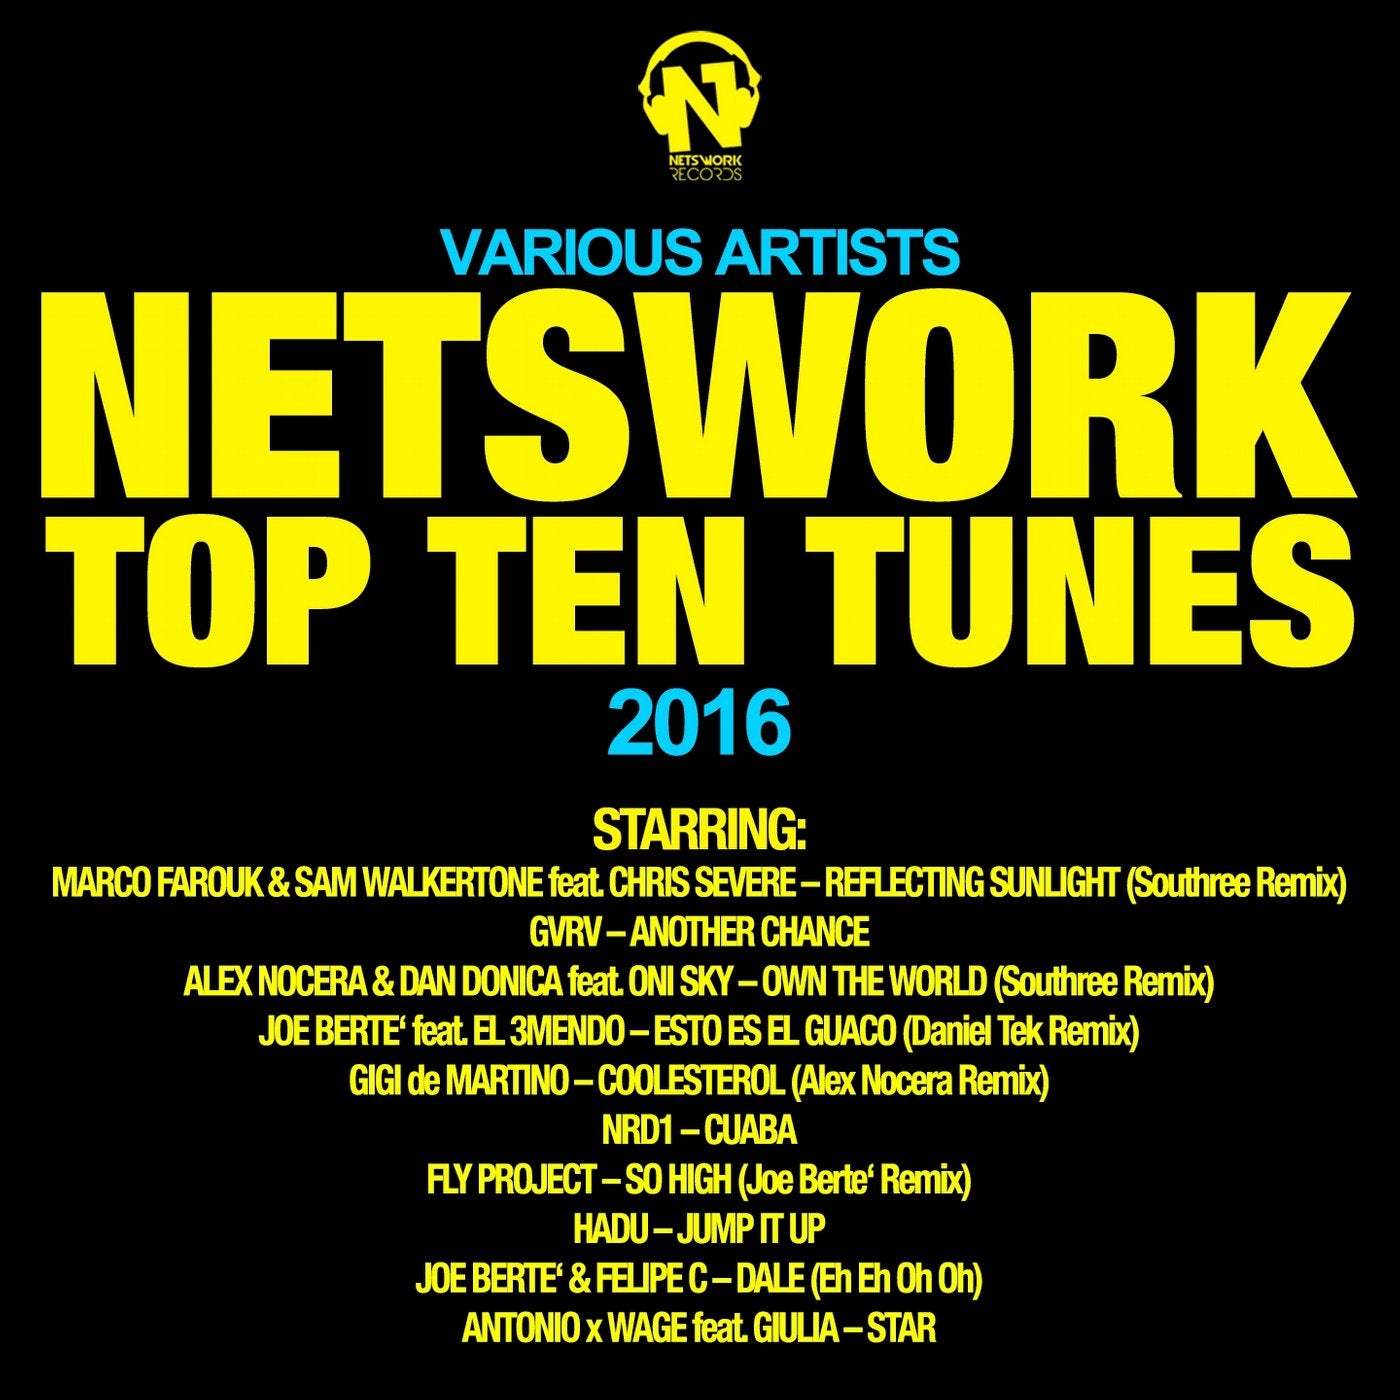 Netswork Top Ten Tunes 2016